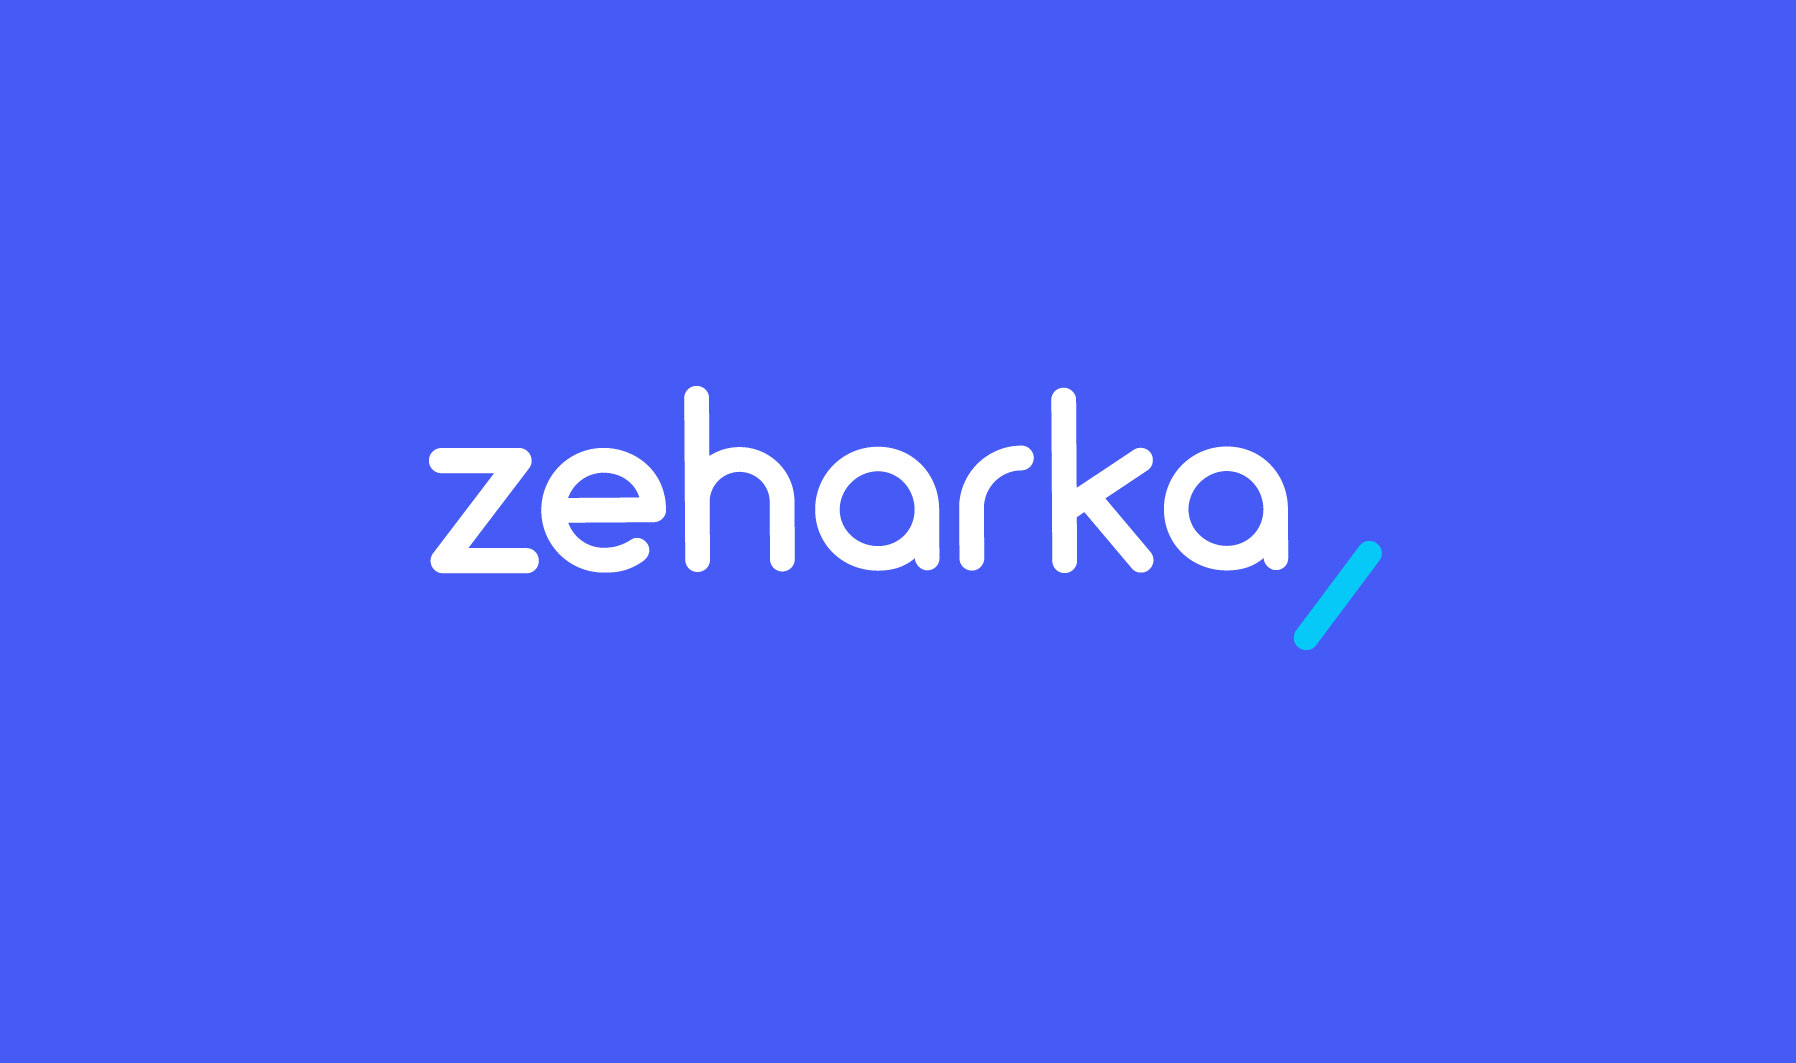 Zeharka